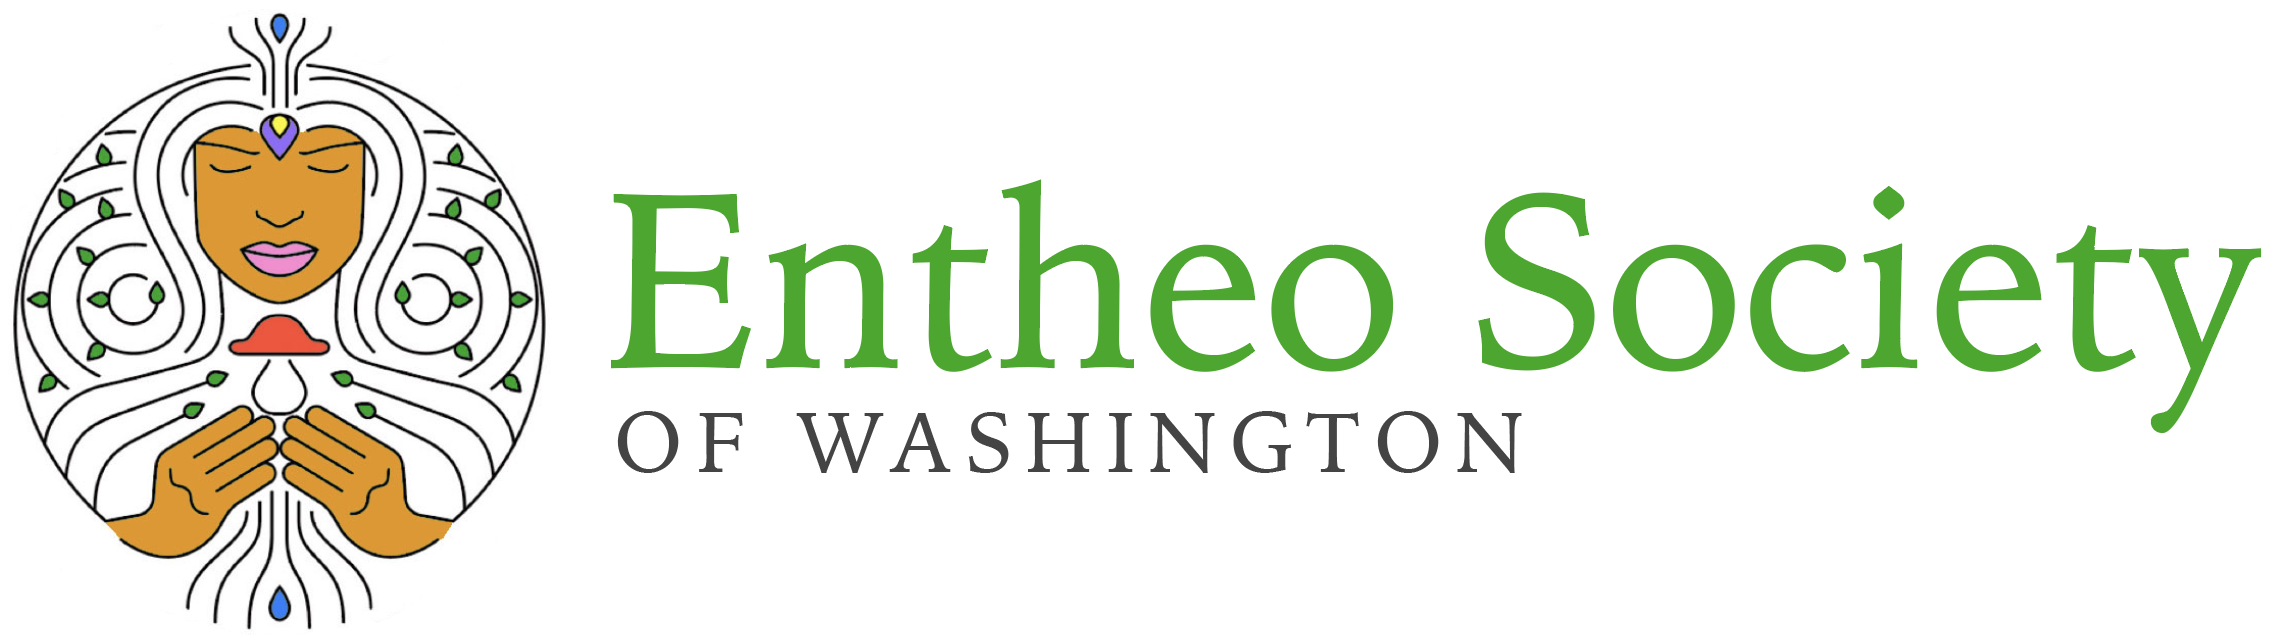 Entheo Society of Washington